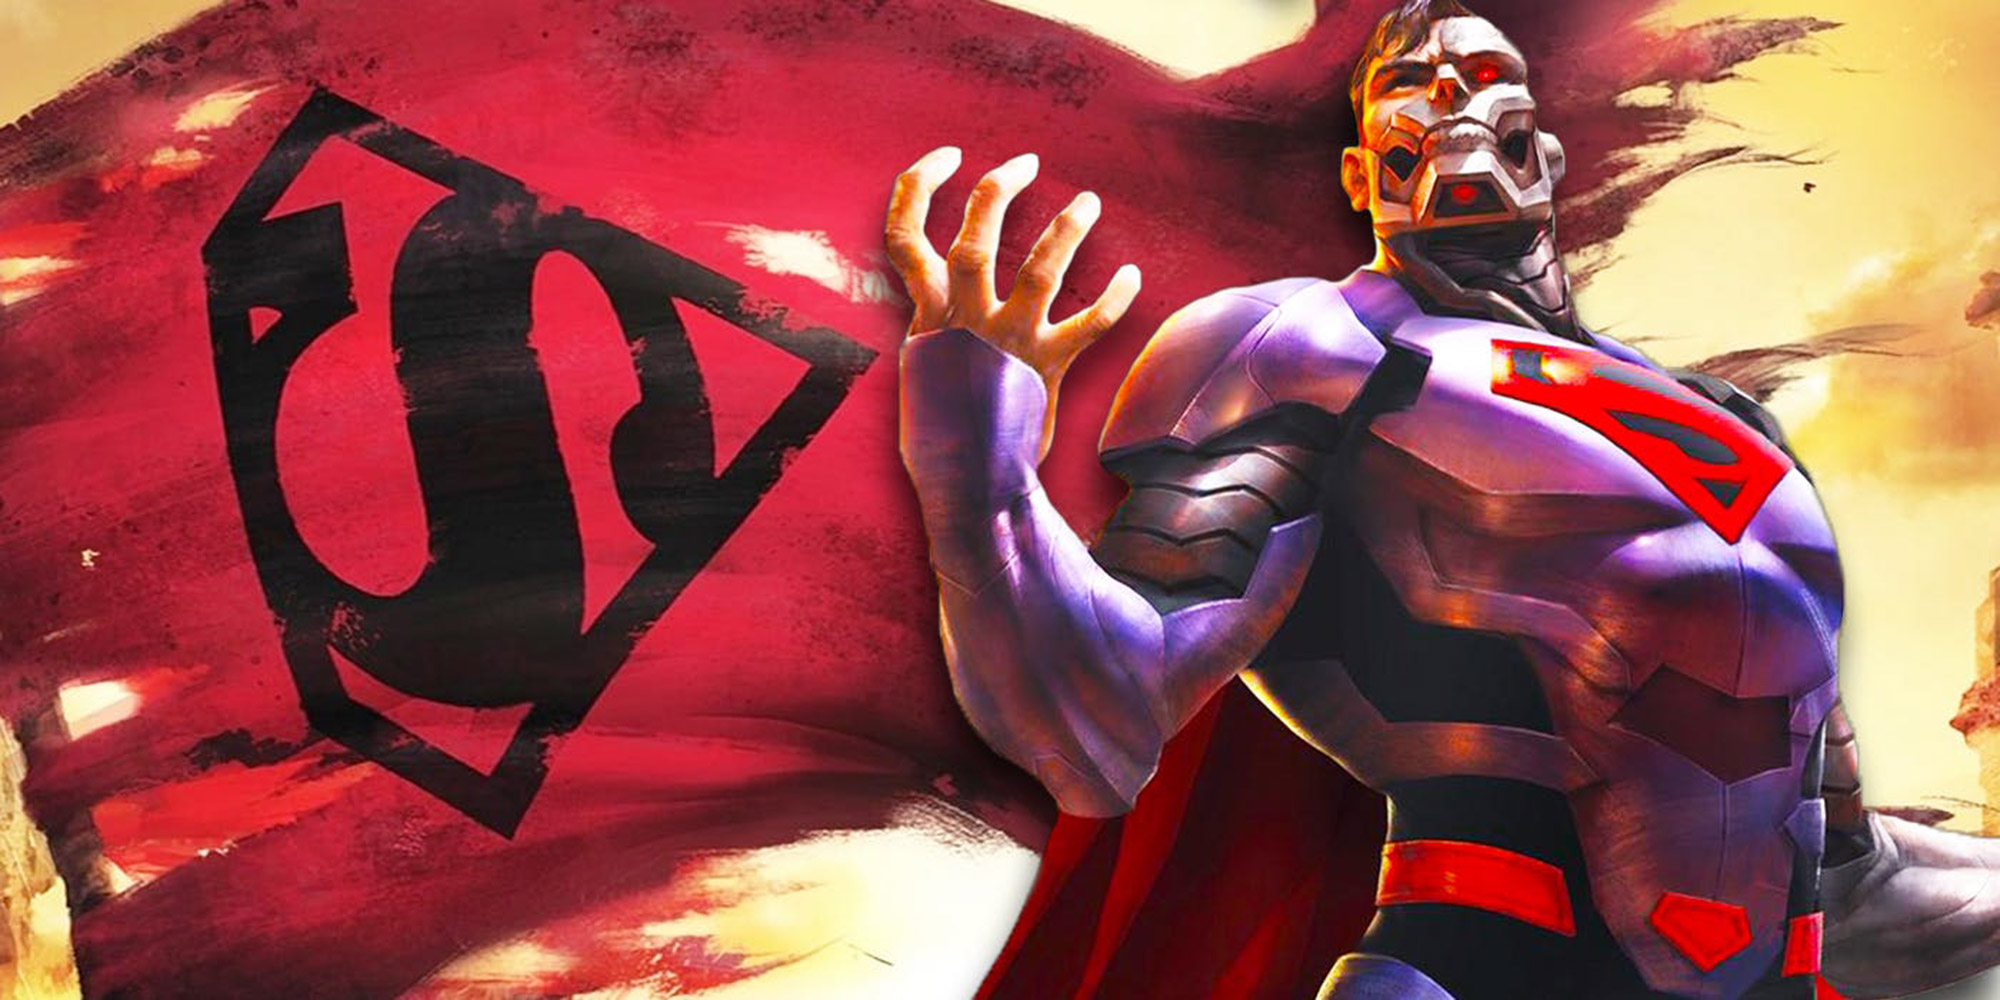  Un trailer pour The Reign of Supermen